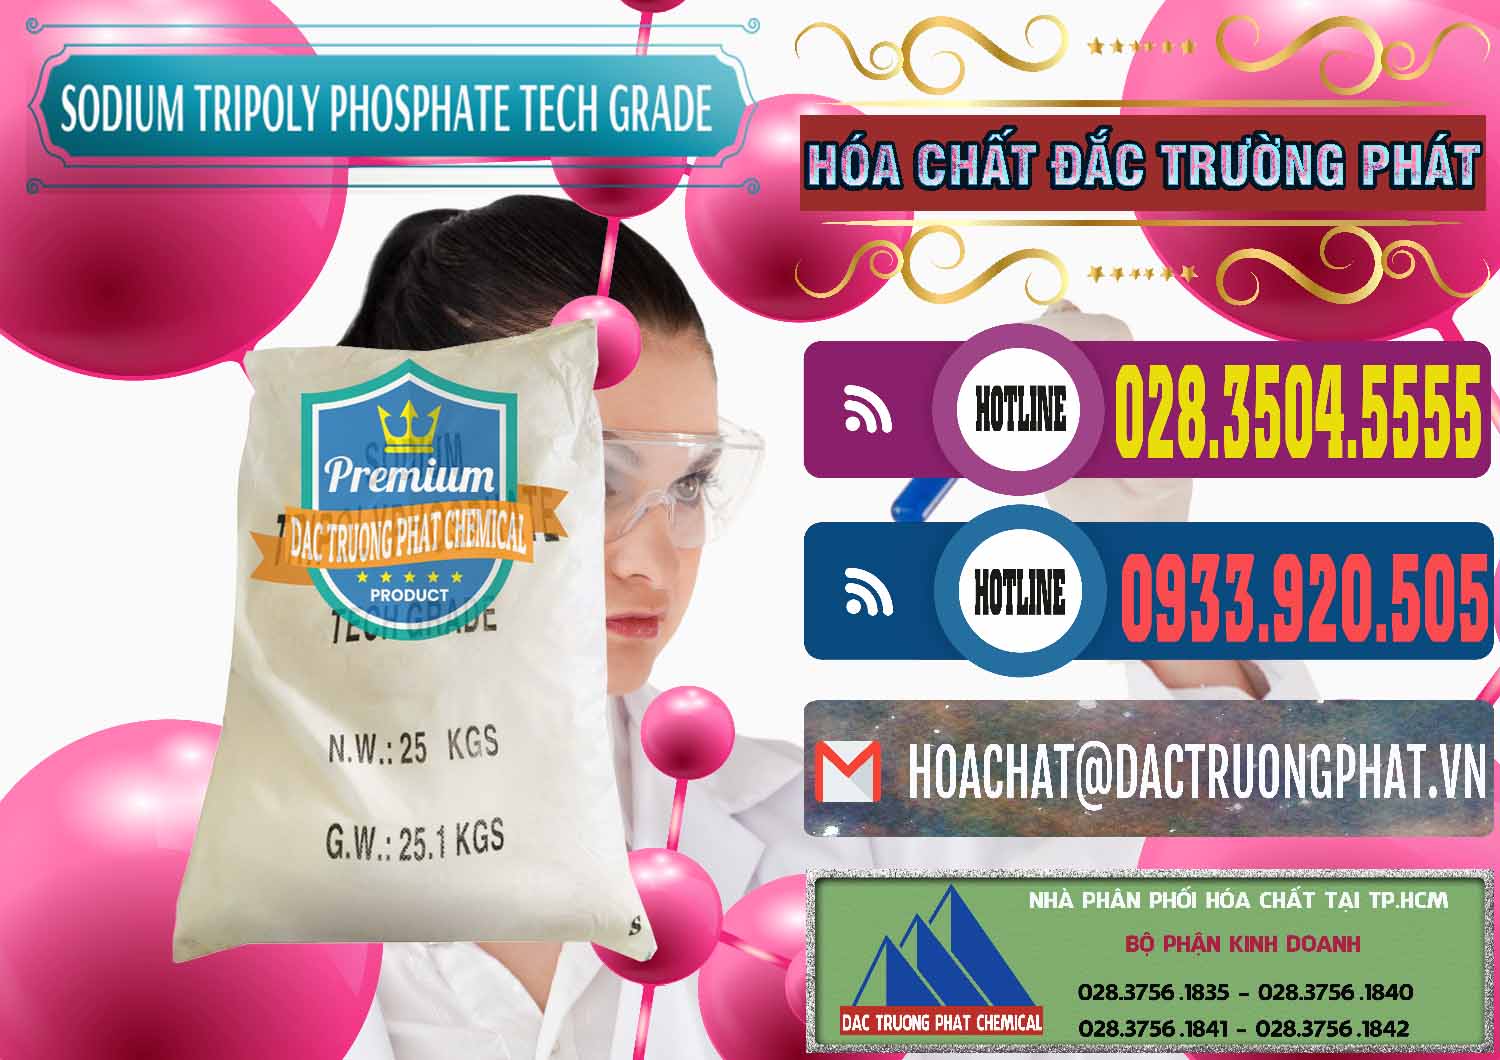 Đơn vị chuyên bán ( phân phối ) Sodium Tripoly Phosphate - STPP Tech Grade Trung Quốc China - 0453 - Nơi chuyên phân phối & kinh doanh hóa chất tại TP.HCM - muabanhoachat.com.vn